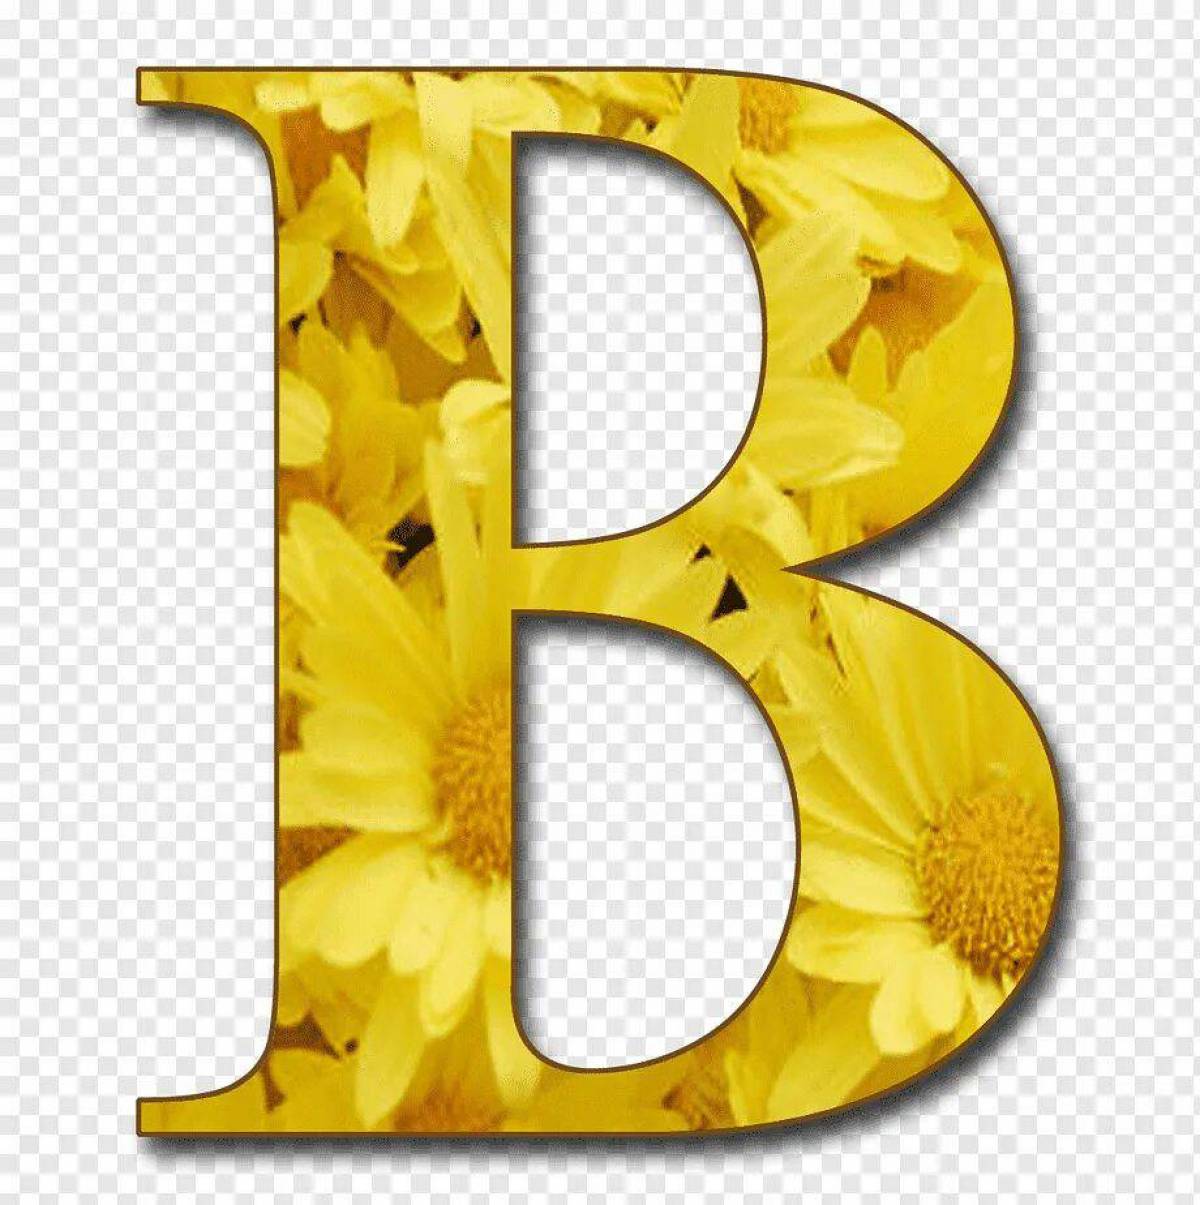 B alphabet. Красивые буквы на прозрачном фоне. Красивые буквы желтые. Красивые буквы алфавита. Буква а желтая.